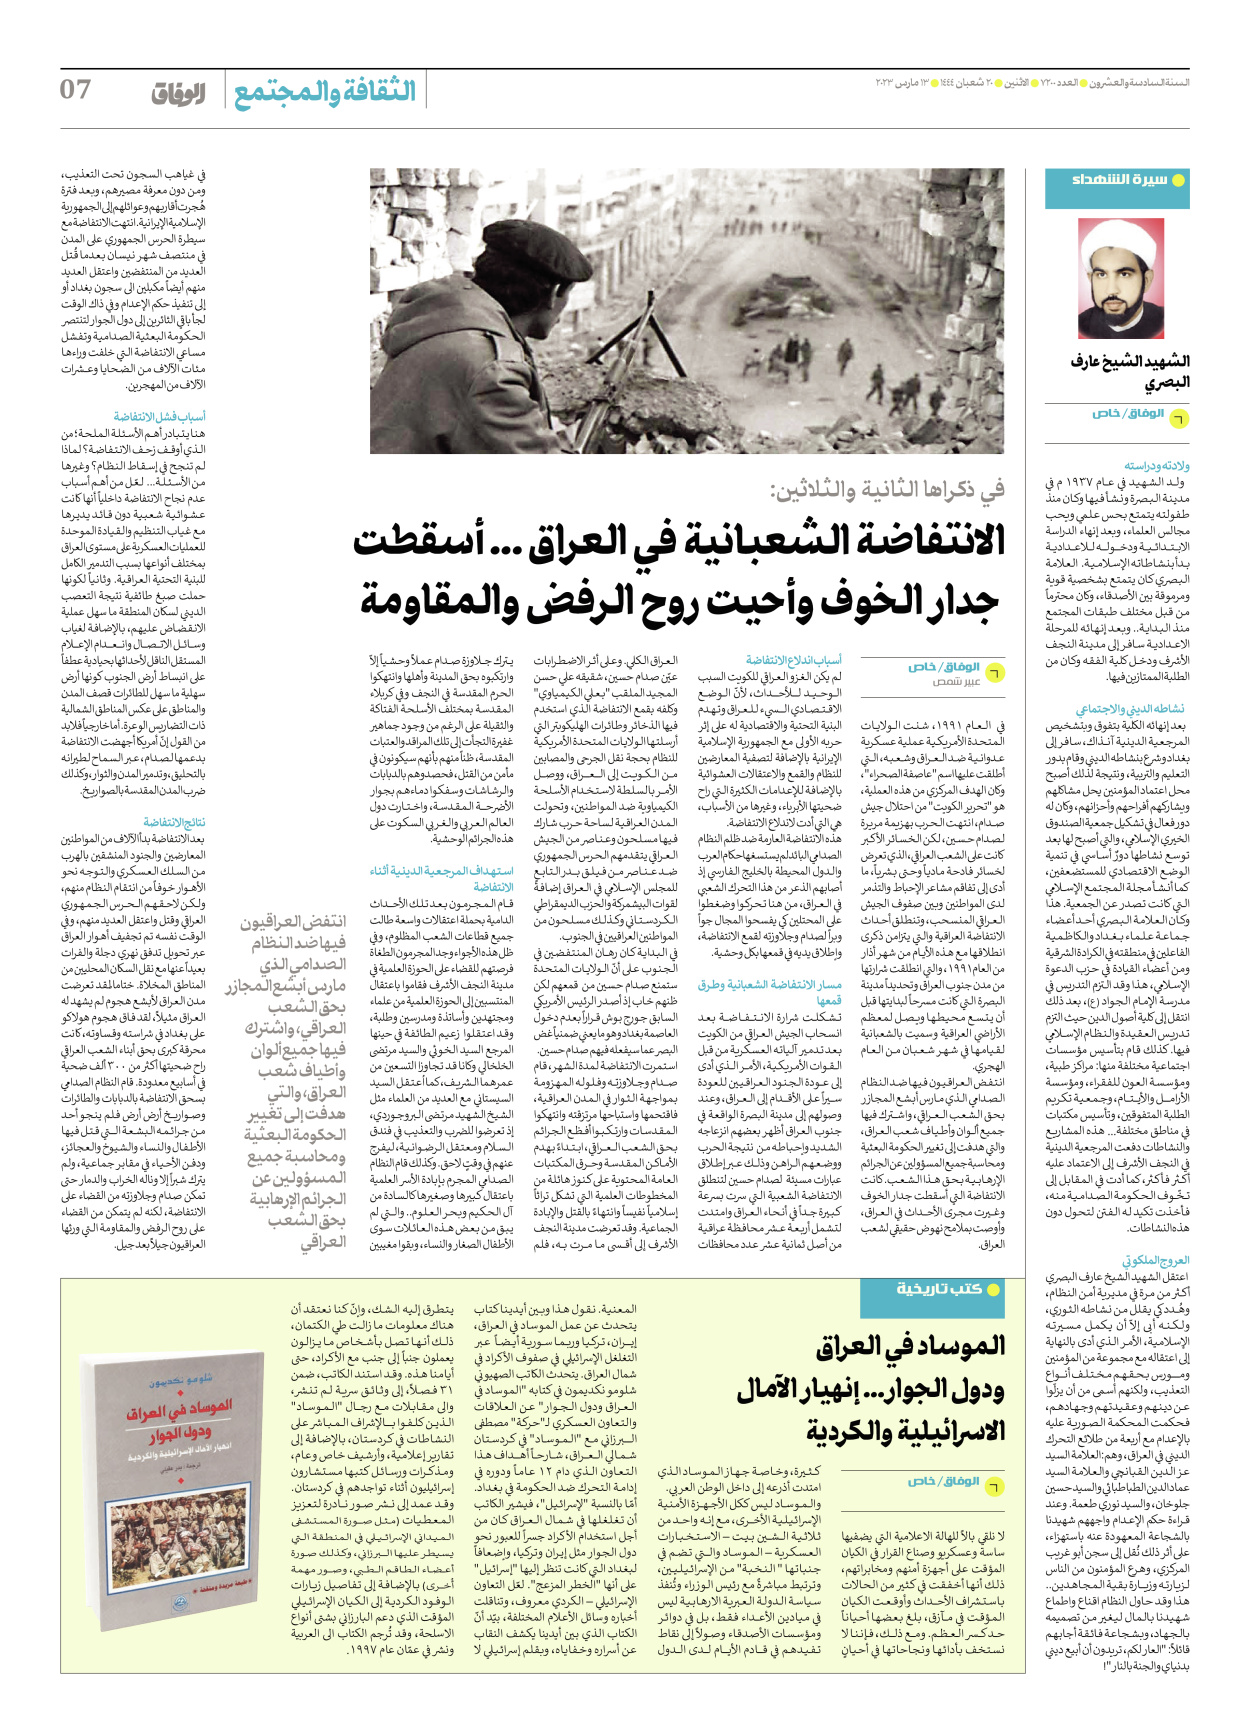 صحیفة ایران الدولیة الوفاق - العدد سبعة آلاف ومائتان - ١٣ مارس ٢٠٢٣ - الصفحة ۷